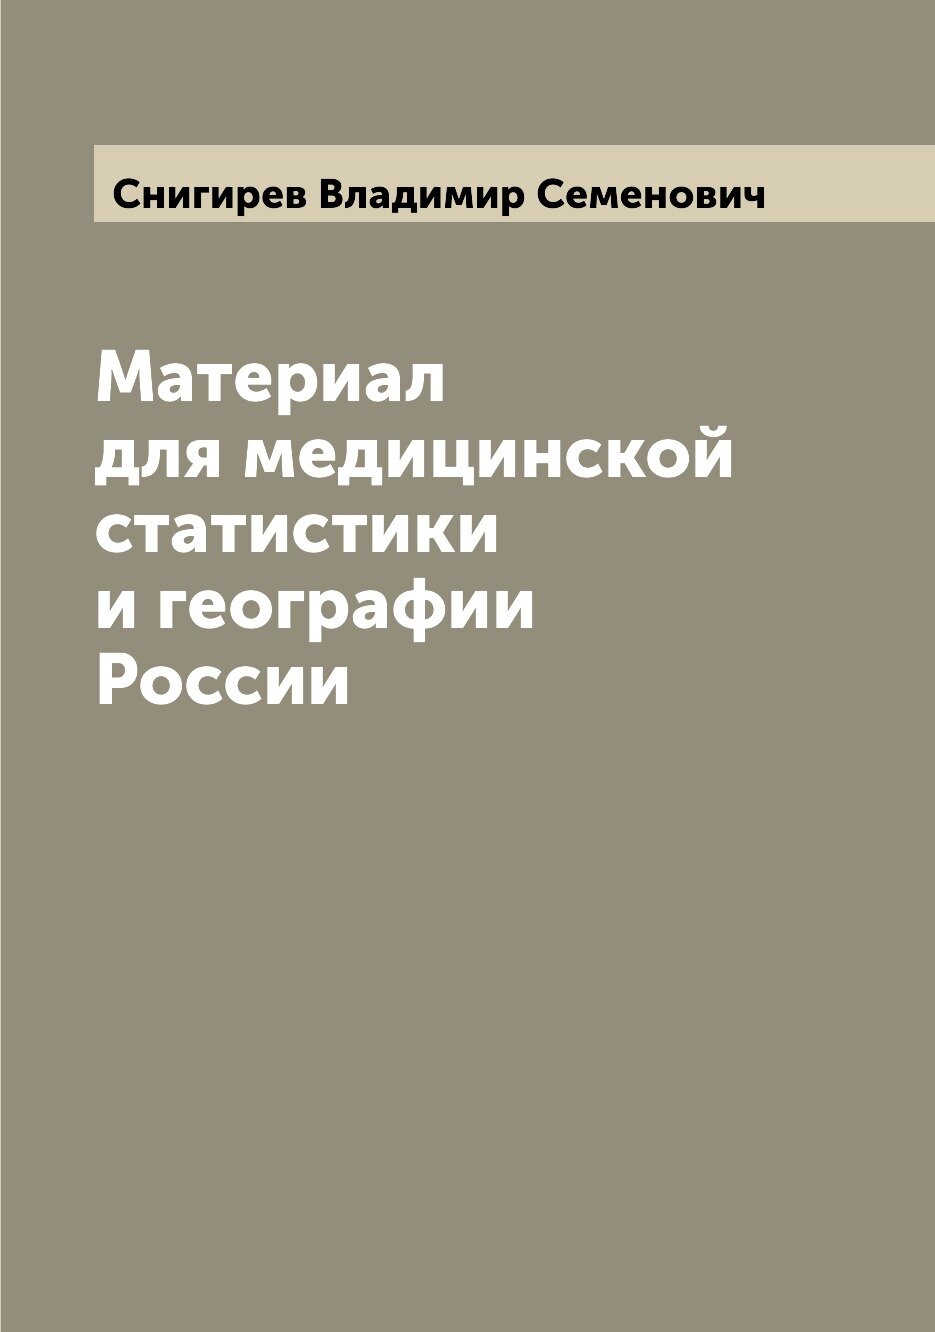 Материал для медицинской статистики и географии России